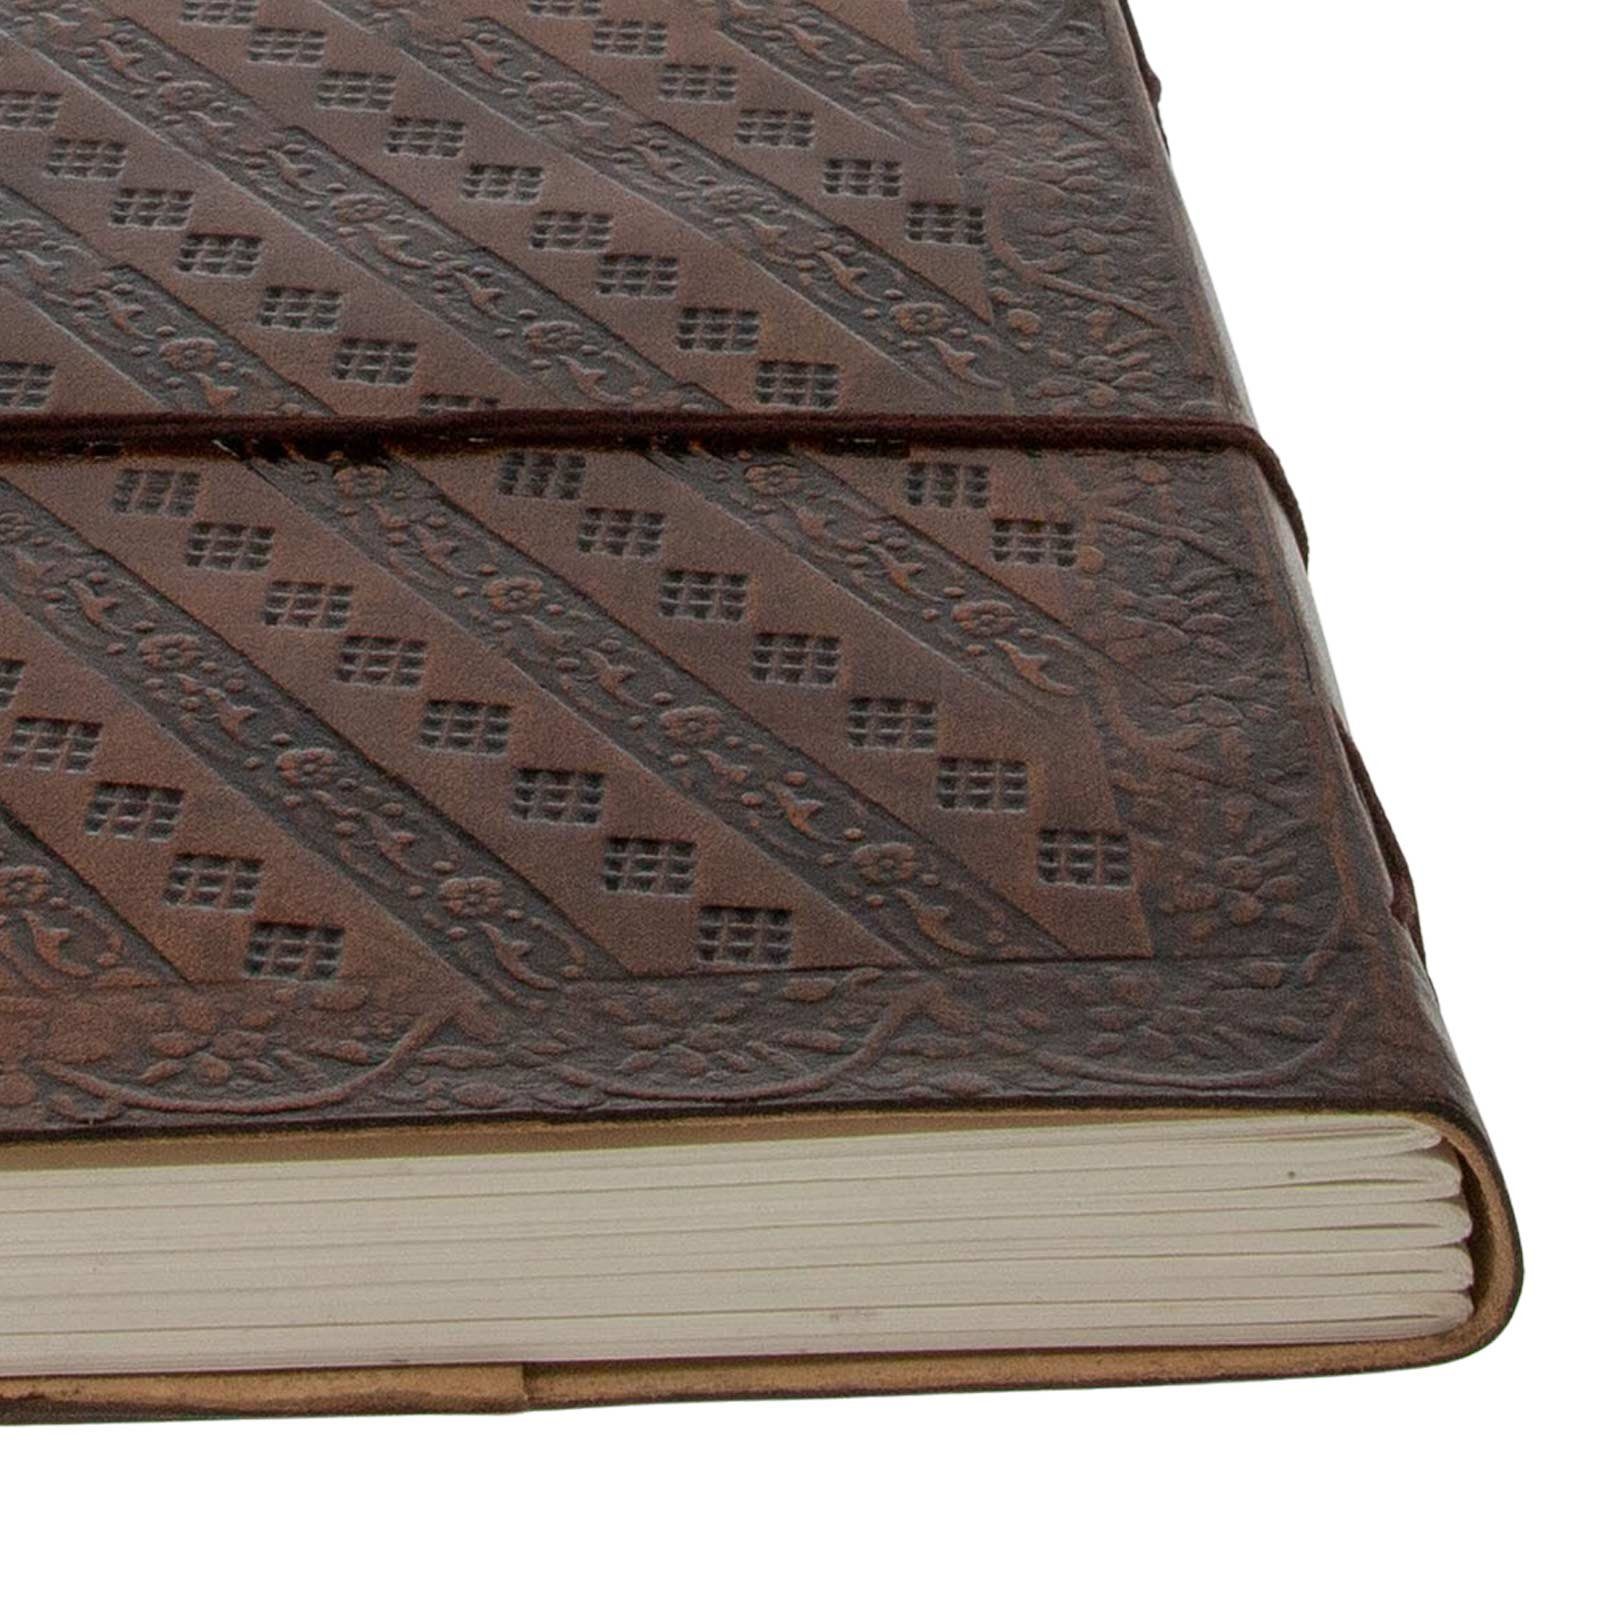 KUNST UND MAGIE Lord Ganesha Tagebuch Notizbuch Tagebuch handgefertigt-geprägtes Leder 18x13cm